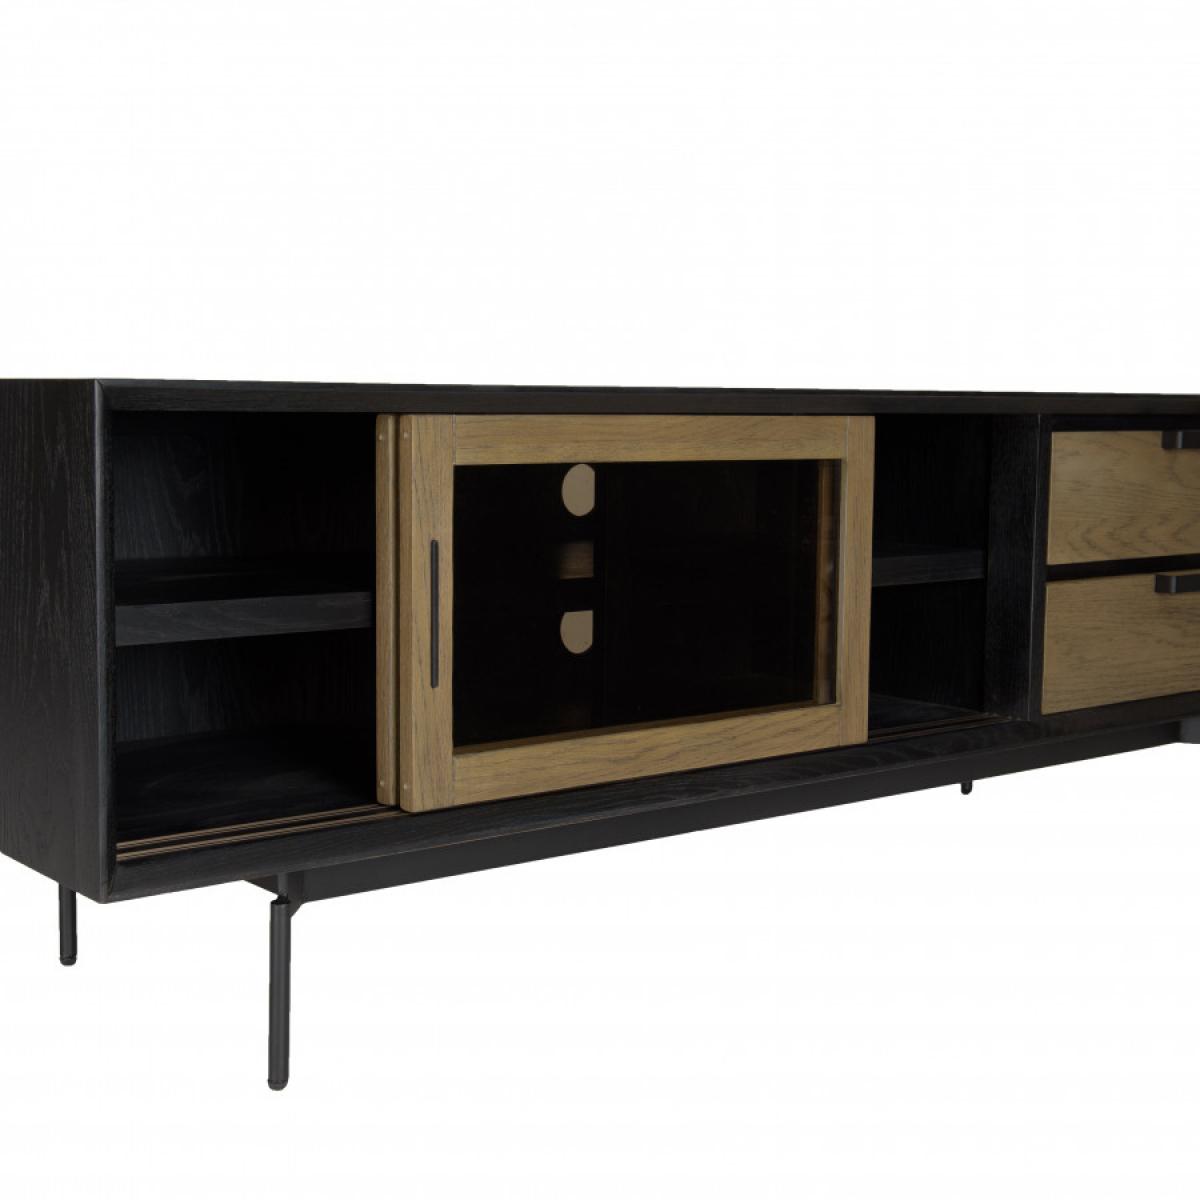 ALMA - Meuble TV marron/noir 2 portes coulissantes en verre fumé pieds métal noir